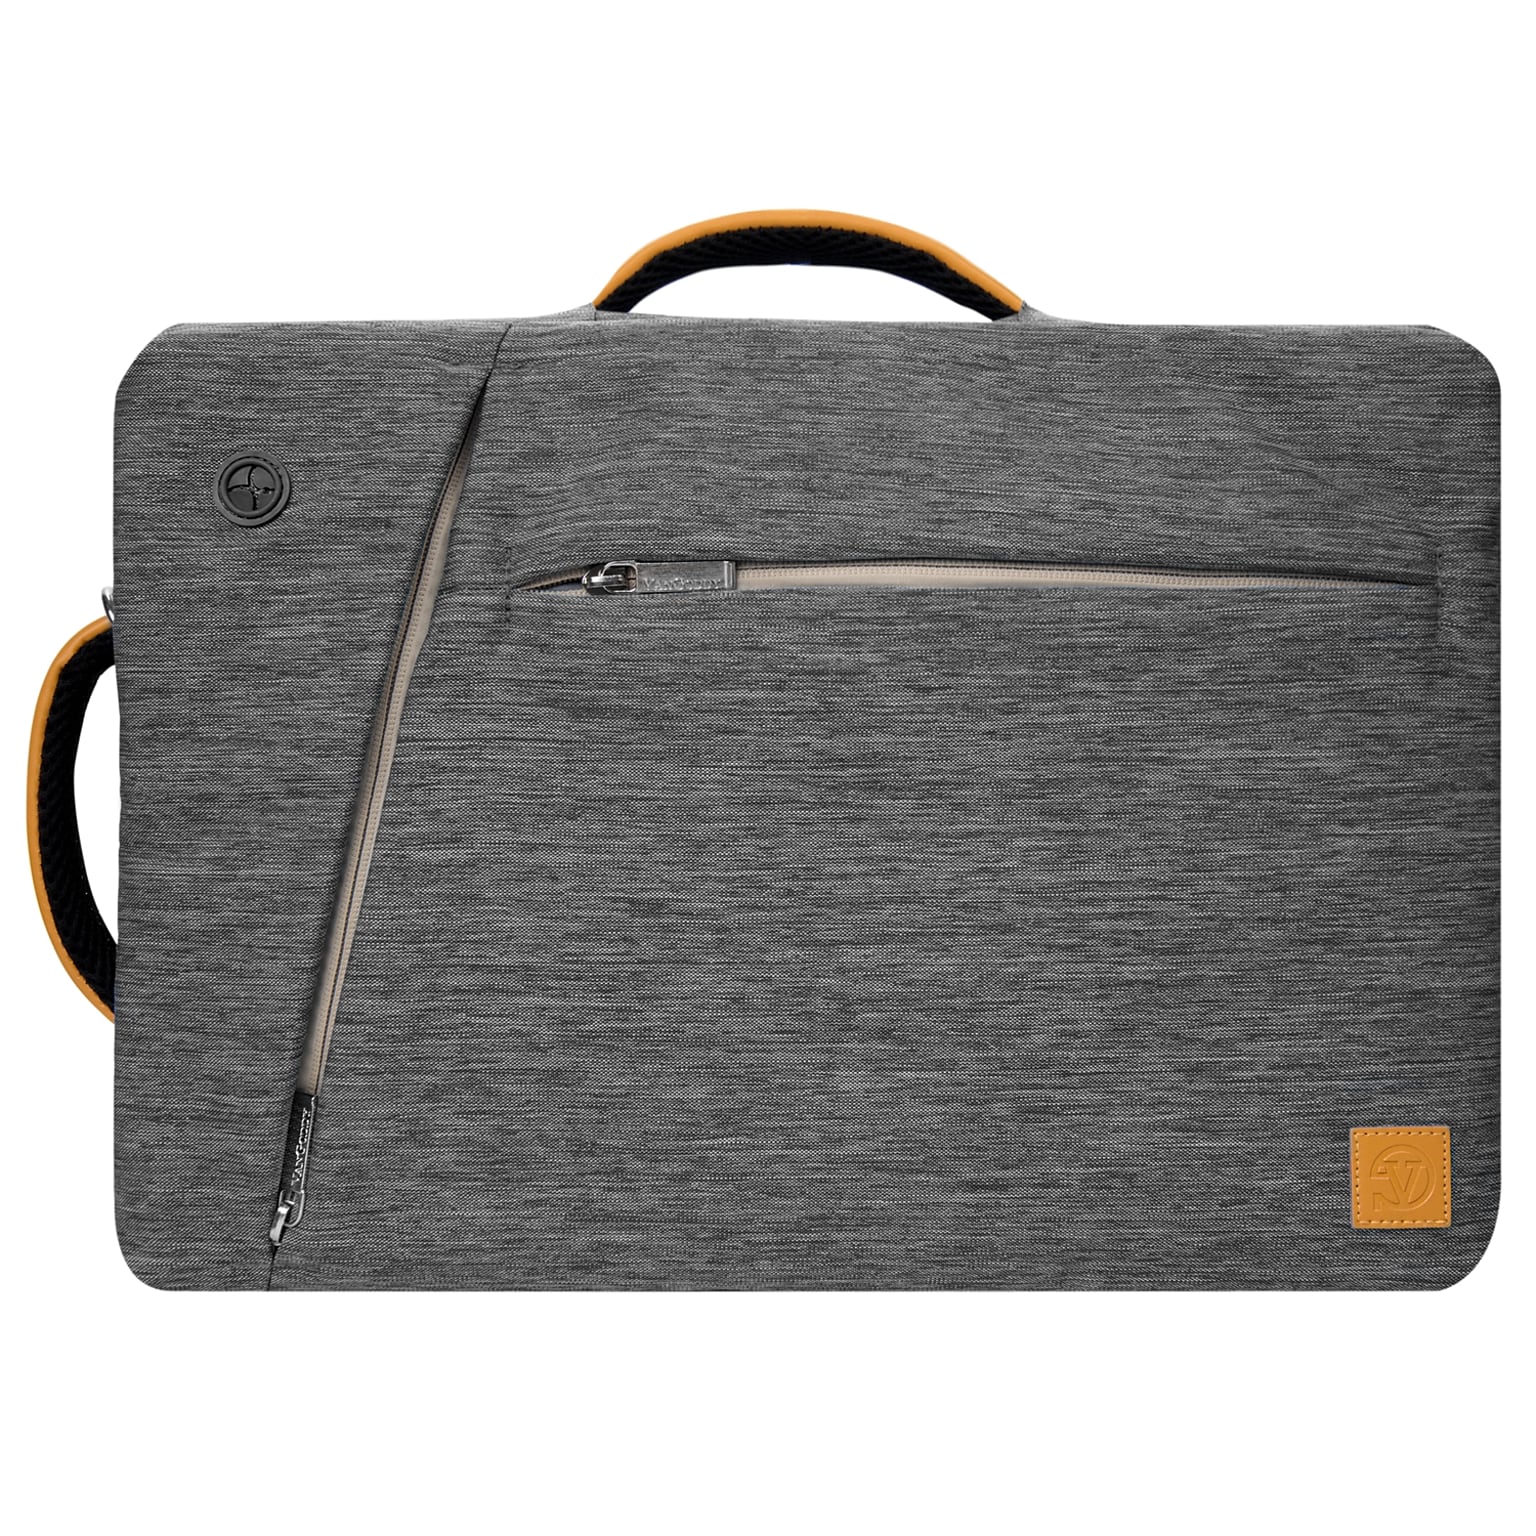 VanGoddy Laptop Messenger, Gray Nylon (LAPLEA032)